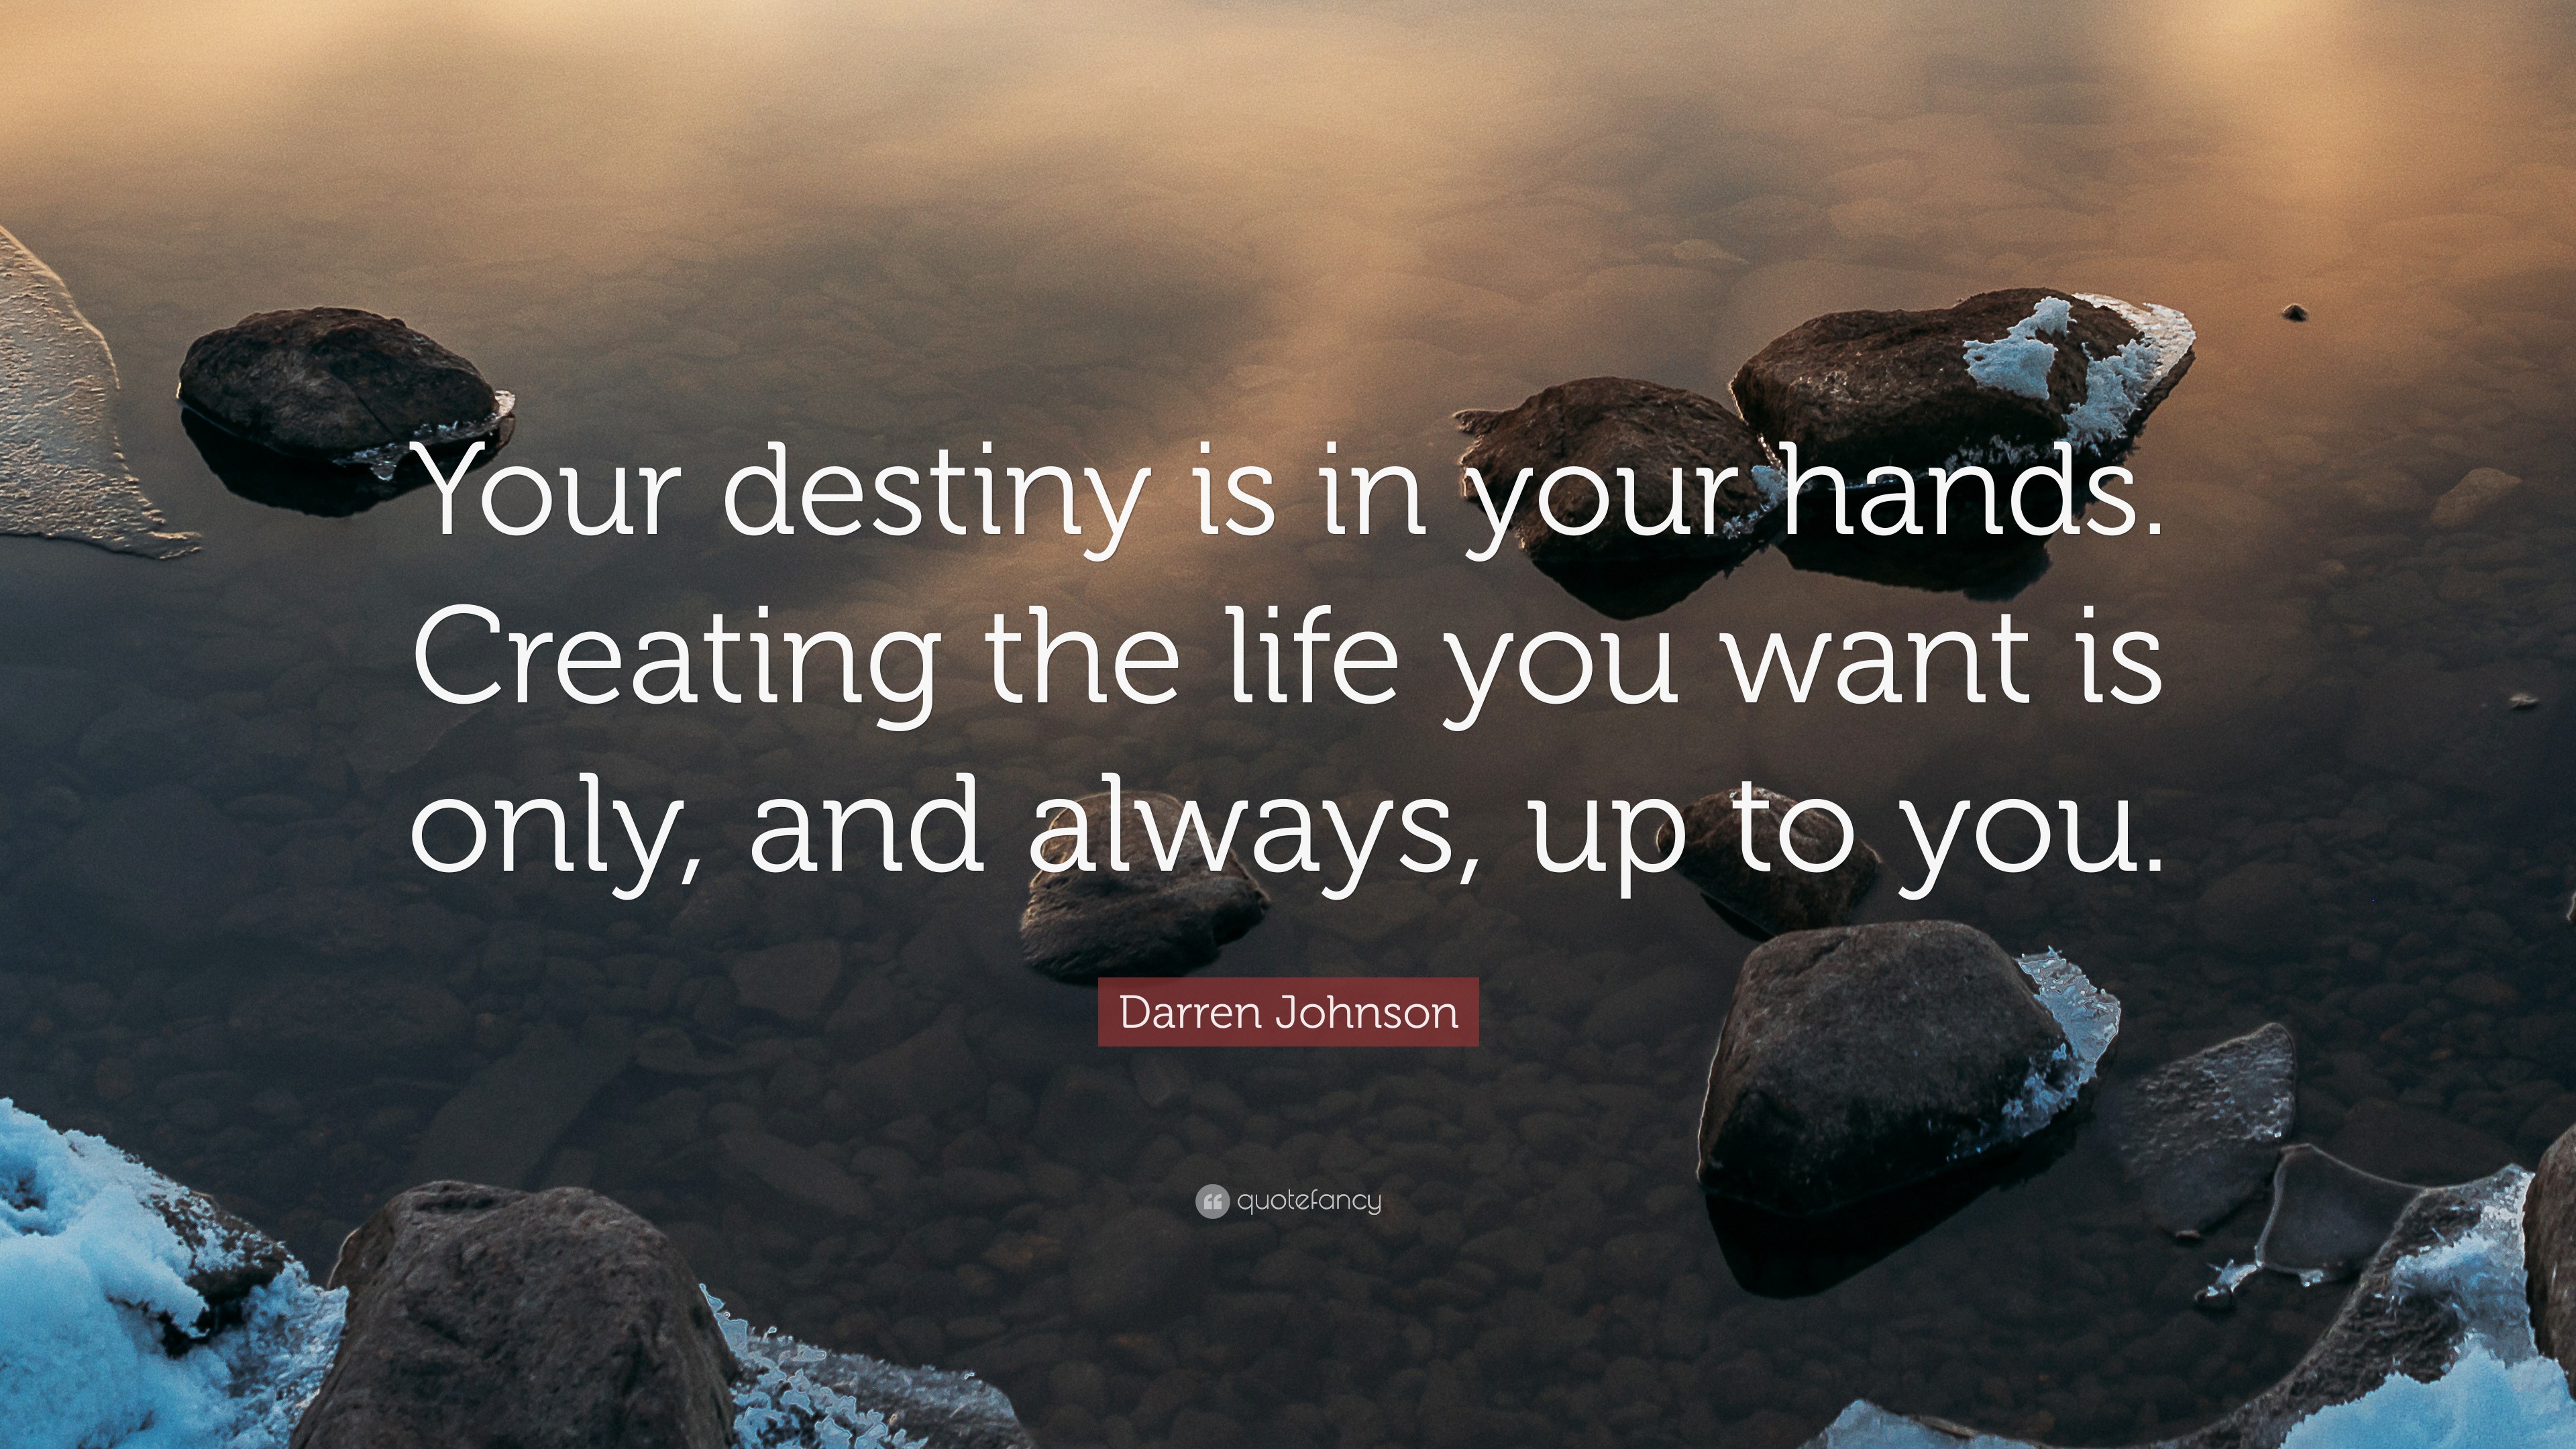 https://quotefancy.com/media/wallpaper/3840x2160/2184721-Darren-Johnson-Quote-Your-destiny-is-in-your-hands-Creating-the.jpg